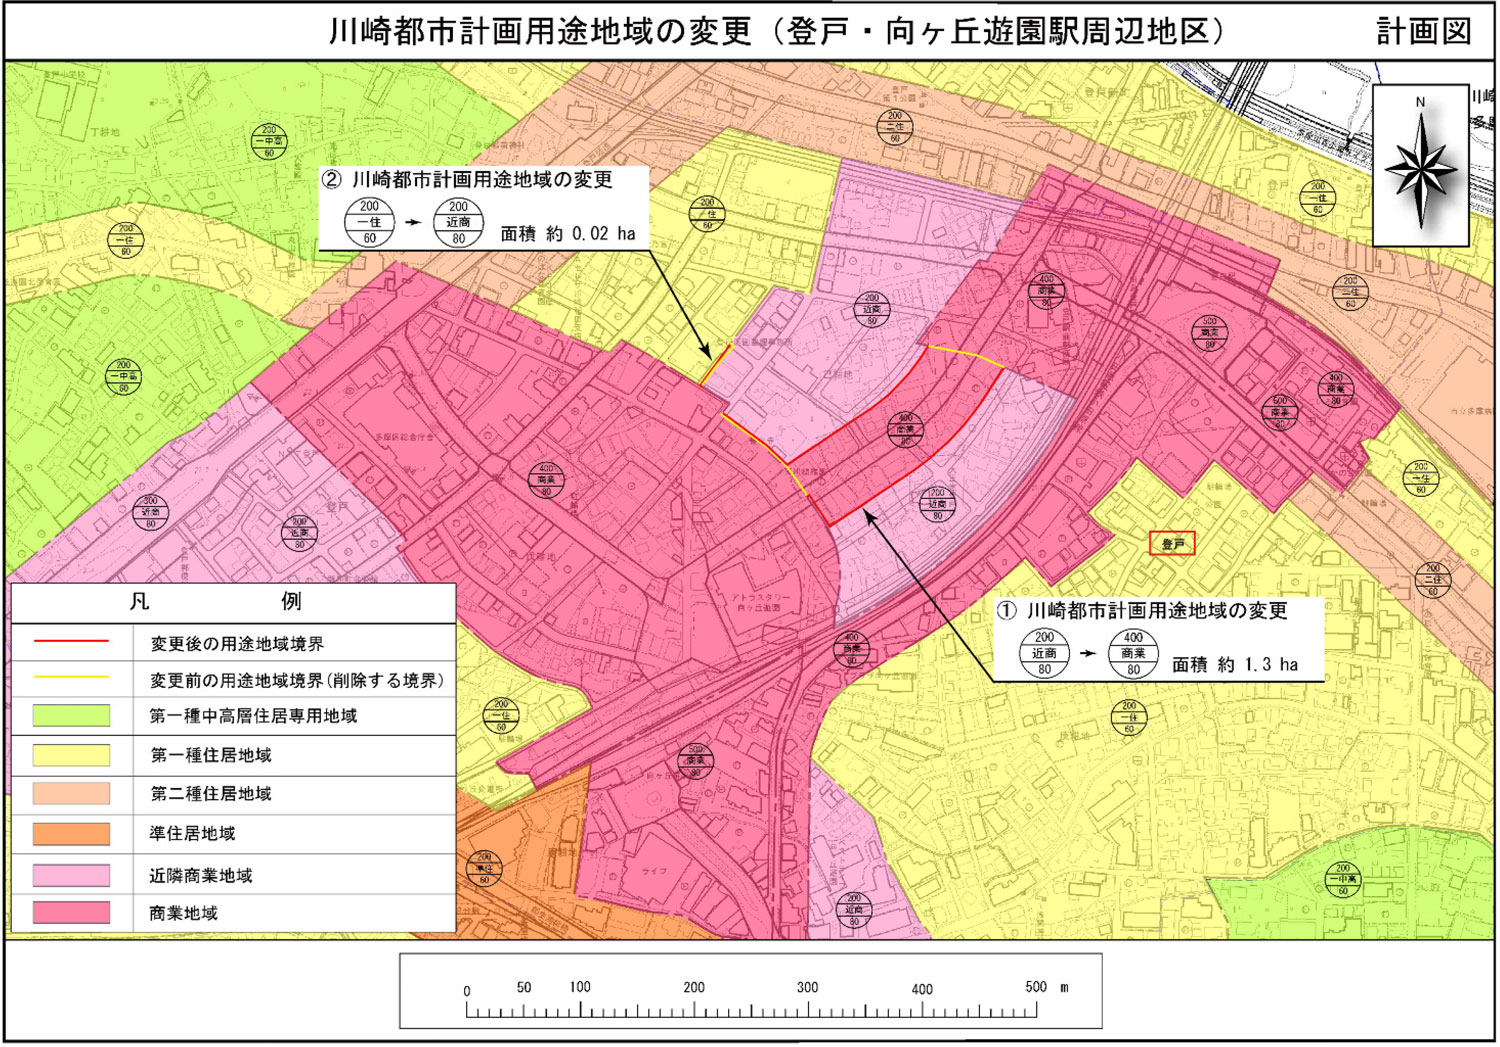 用途地域の変更（登戸・向ヶ丘遊園駅周辺地区）の告示の概要